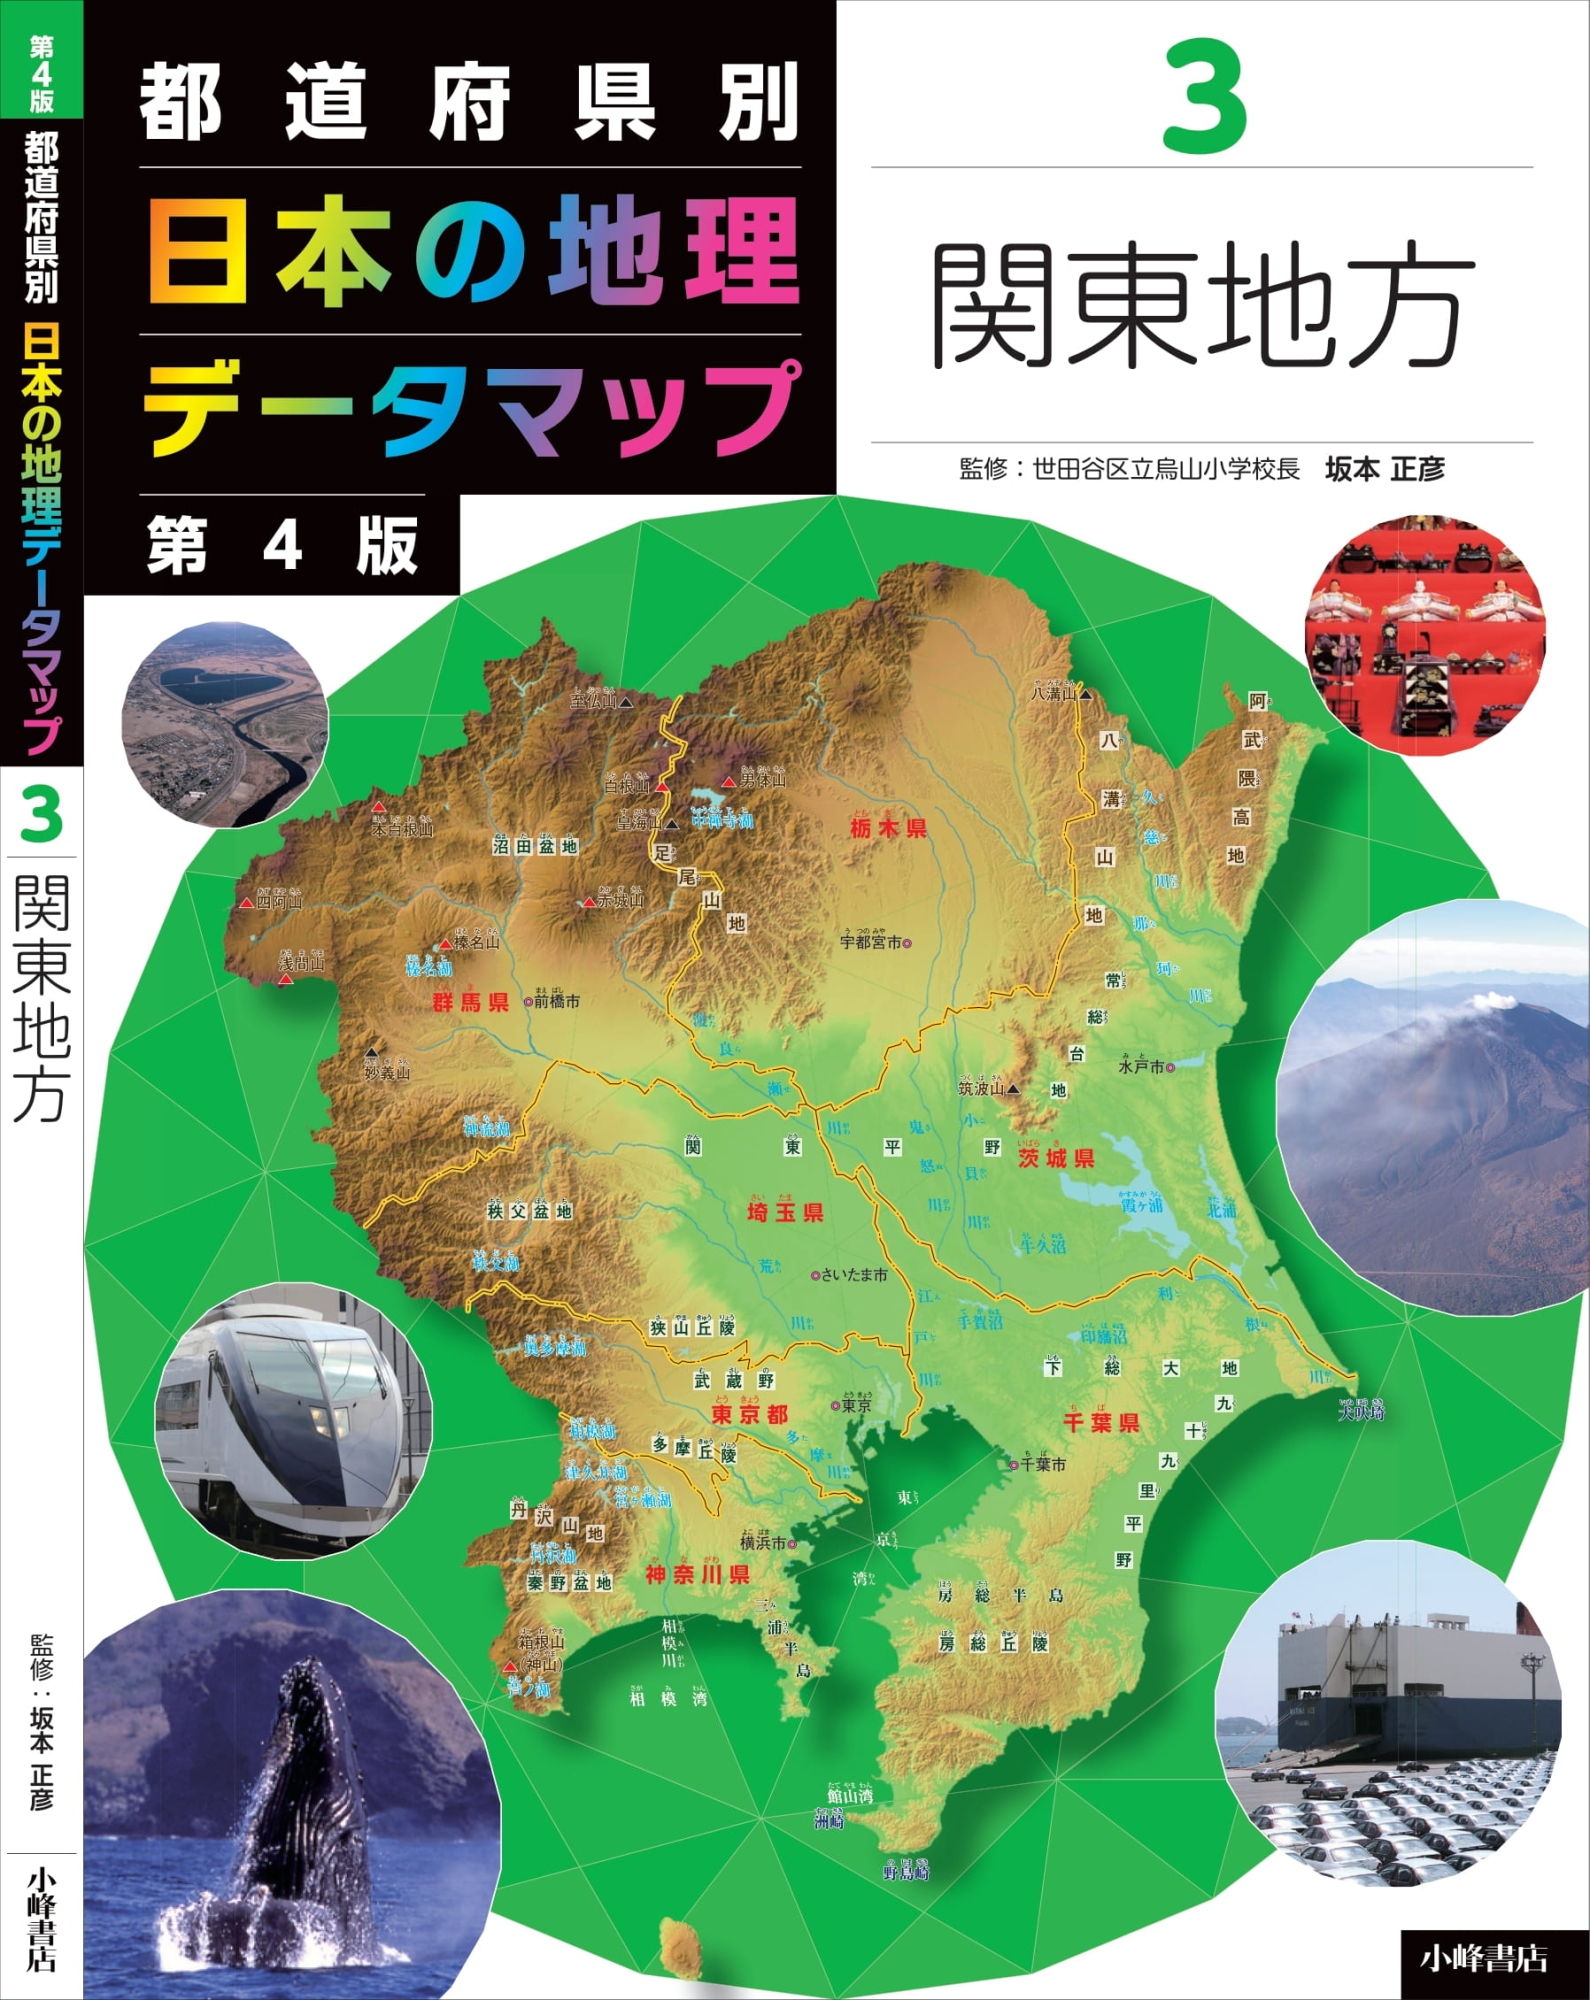 【美品】都道府県別日本の地理データマップセット(全8巻セット)プチプチして